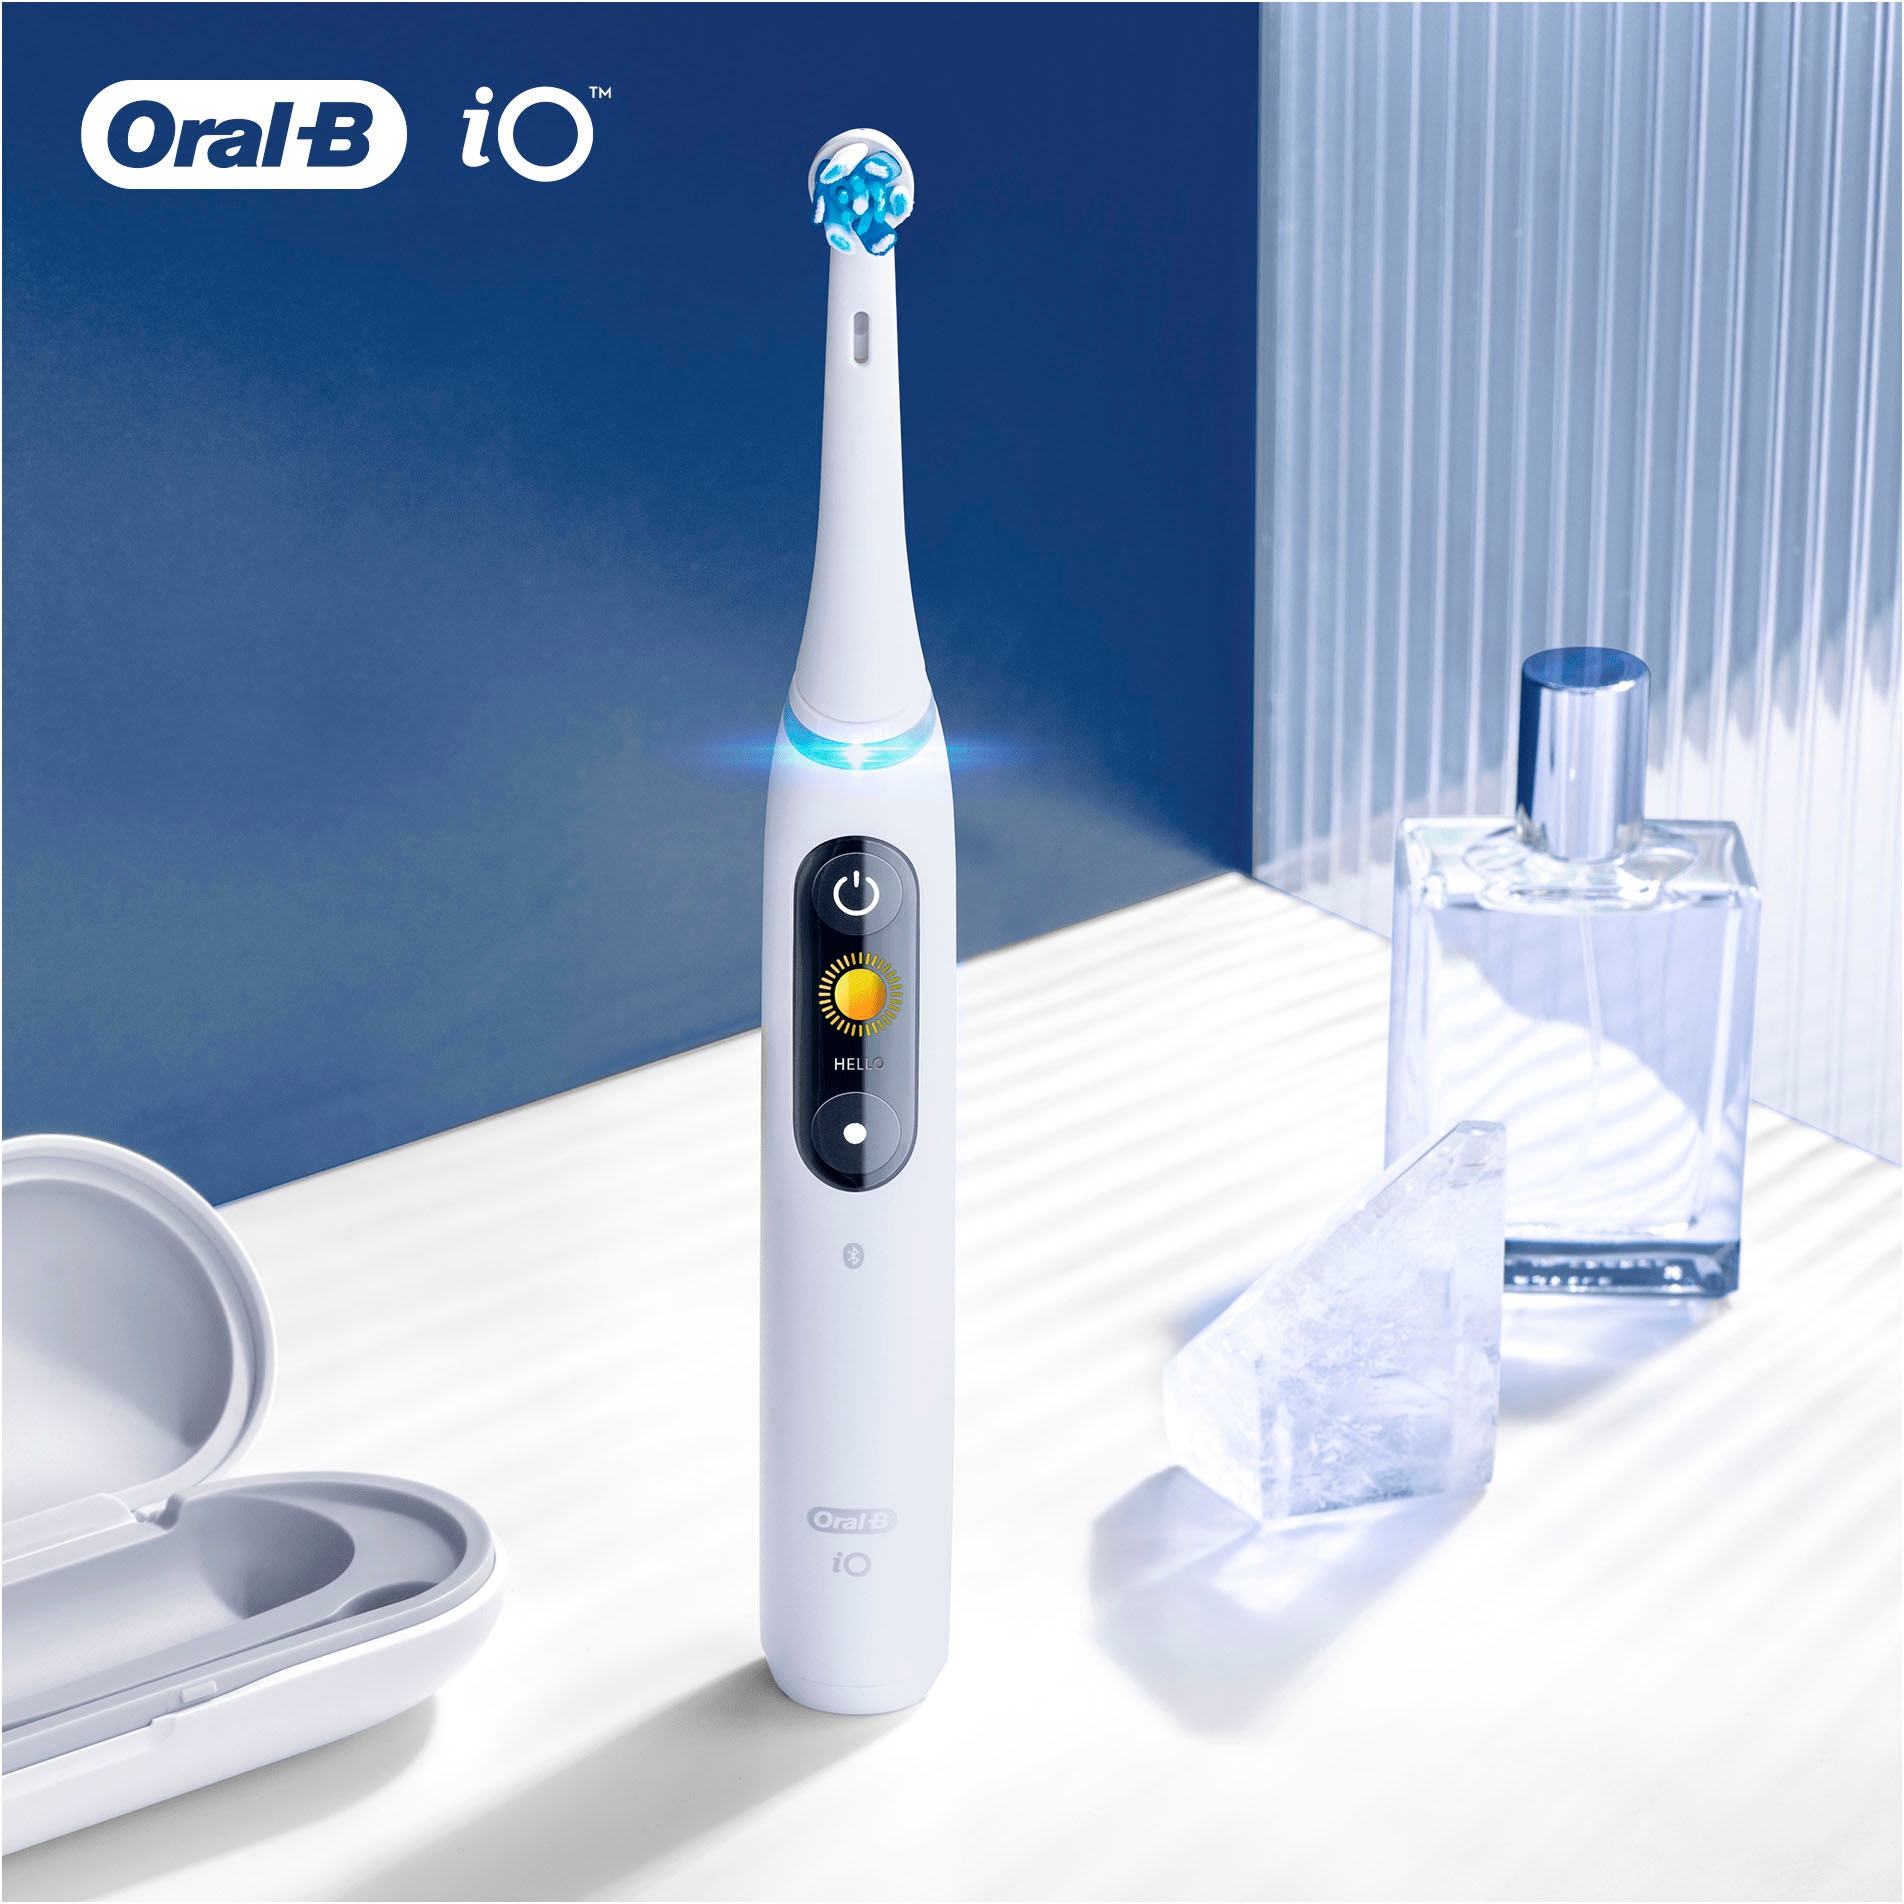 Oral-B Aufsteckbürsten »iO Ultimative Reinigung«, iO Technologie, 2 Stück